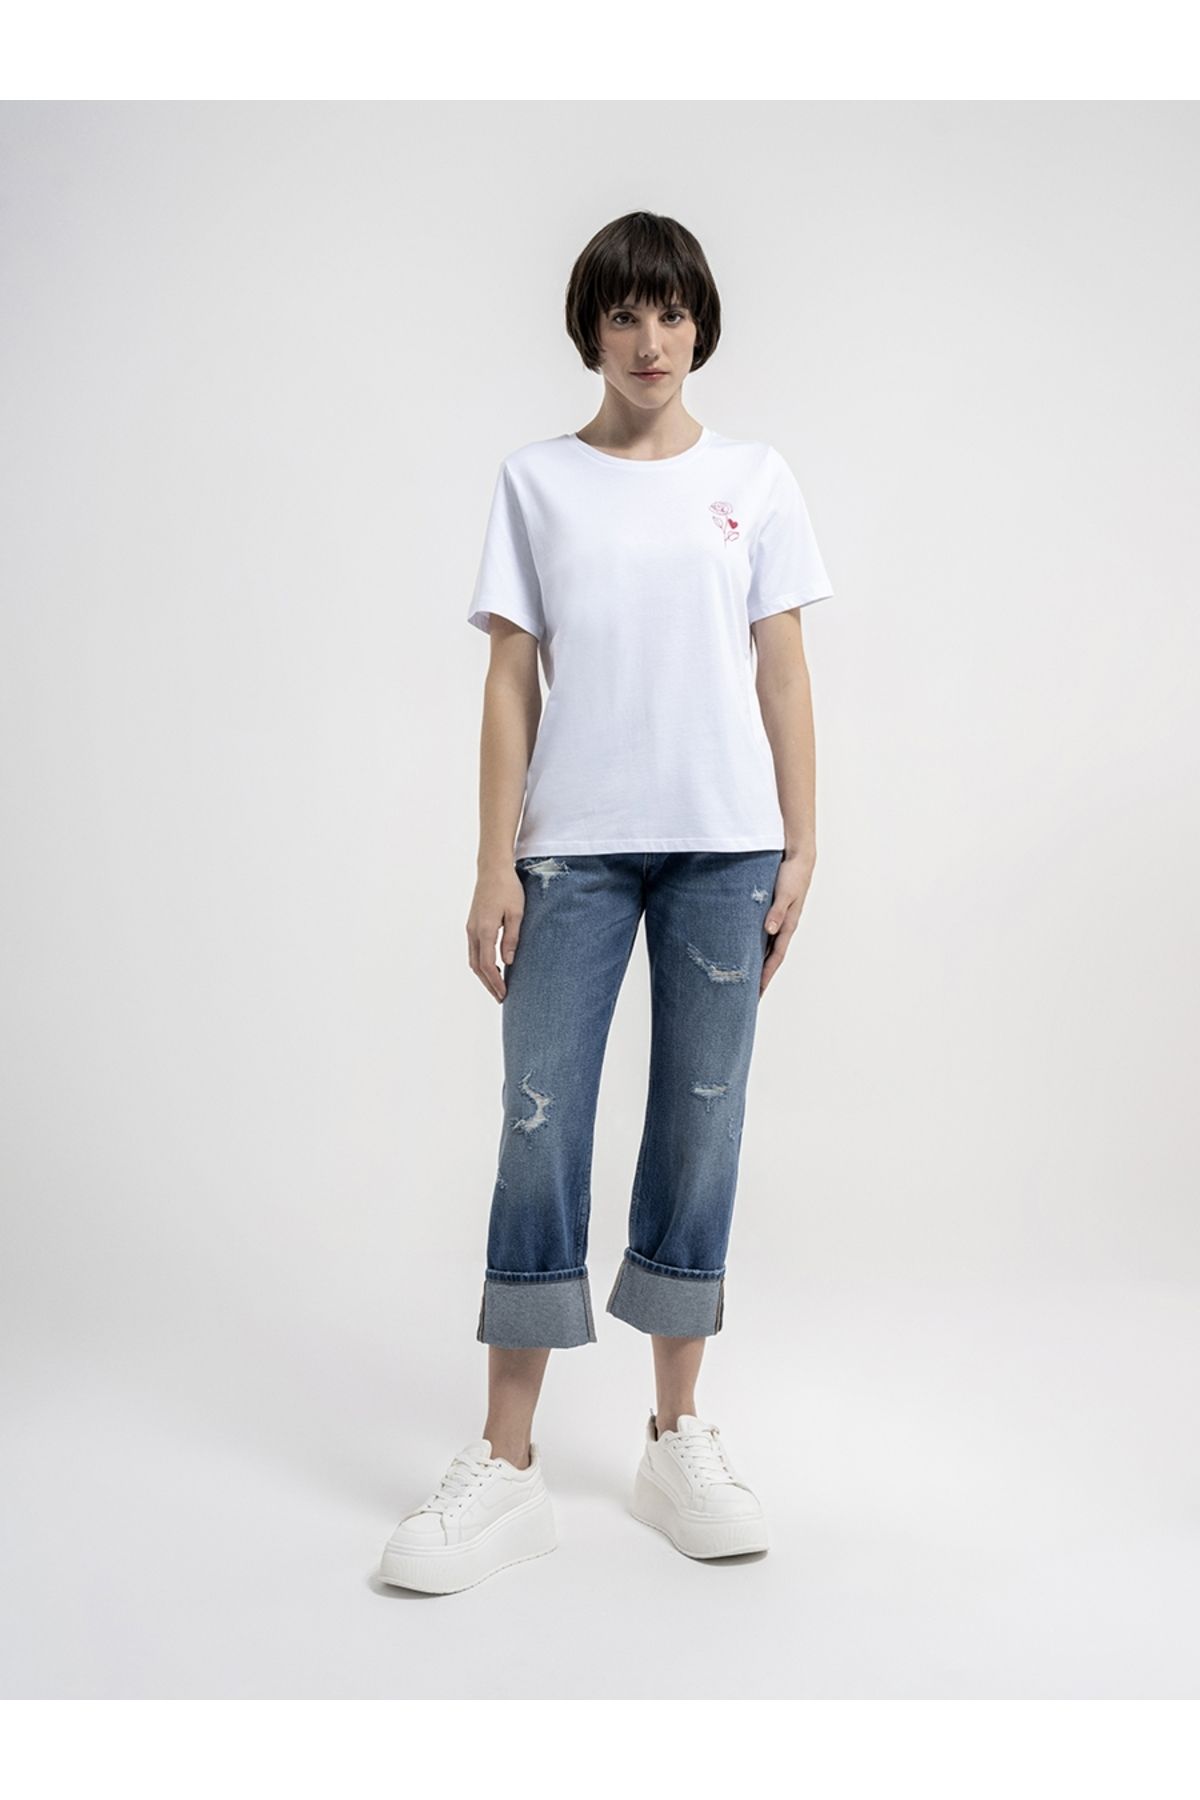 Loft Kadın T-shirt Lf2035659 Whıte